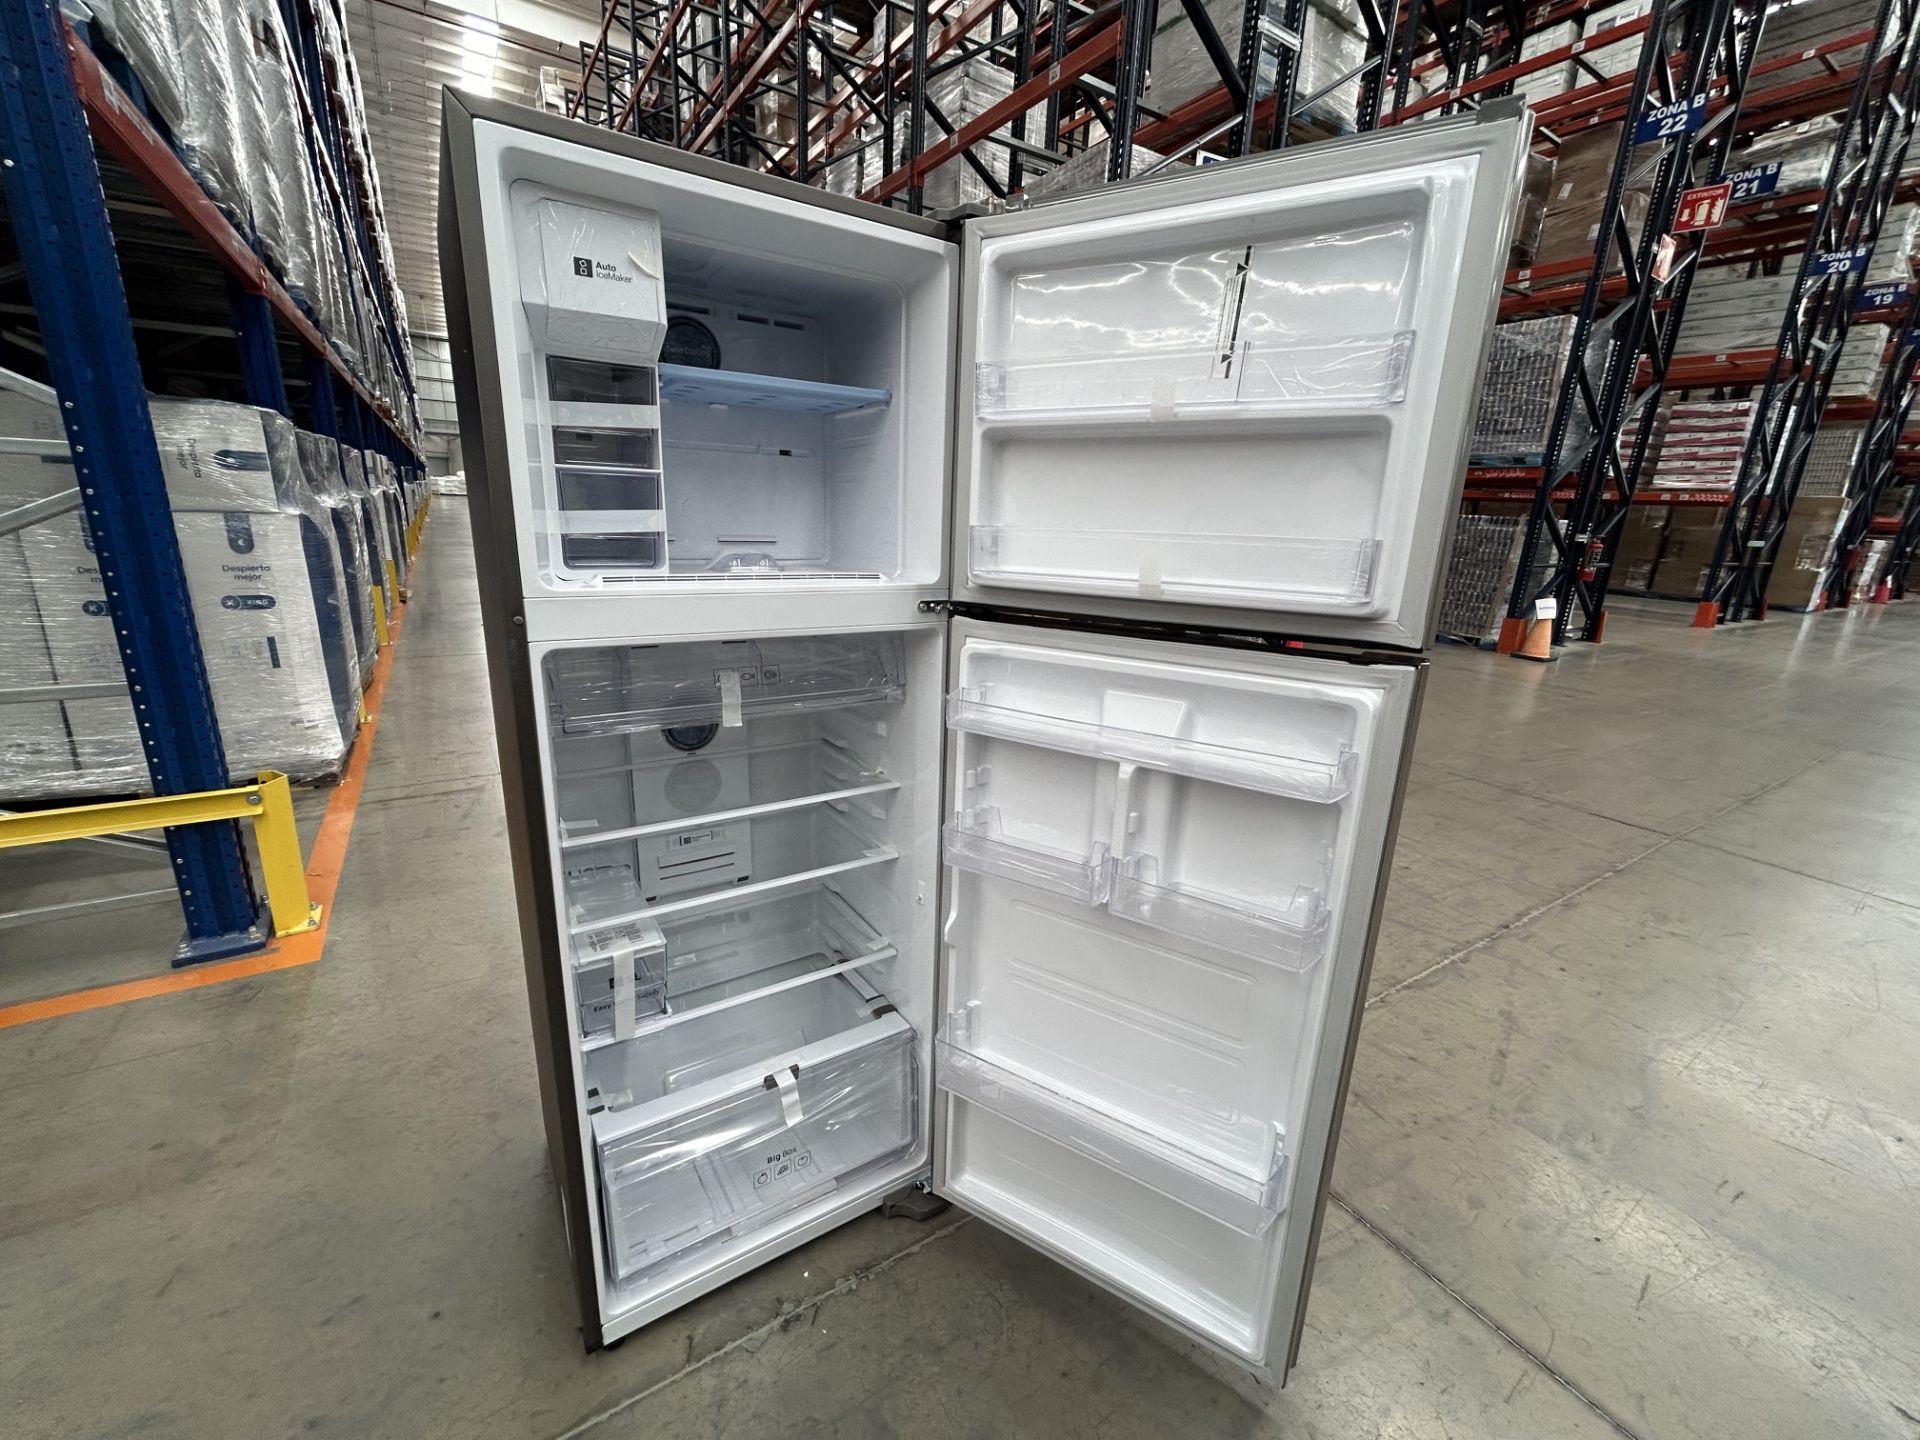 (NUEVO) Lote de 1 Refrigerador con dispensador de agua Marca SAMSUNG, Modelo RT38A5982SL, Serie 084 - Image 4 of 5